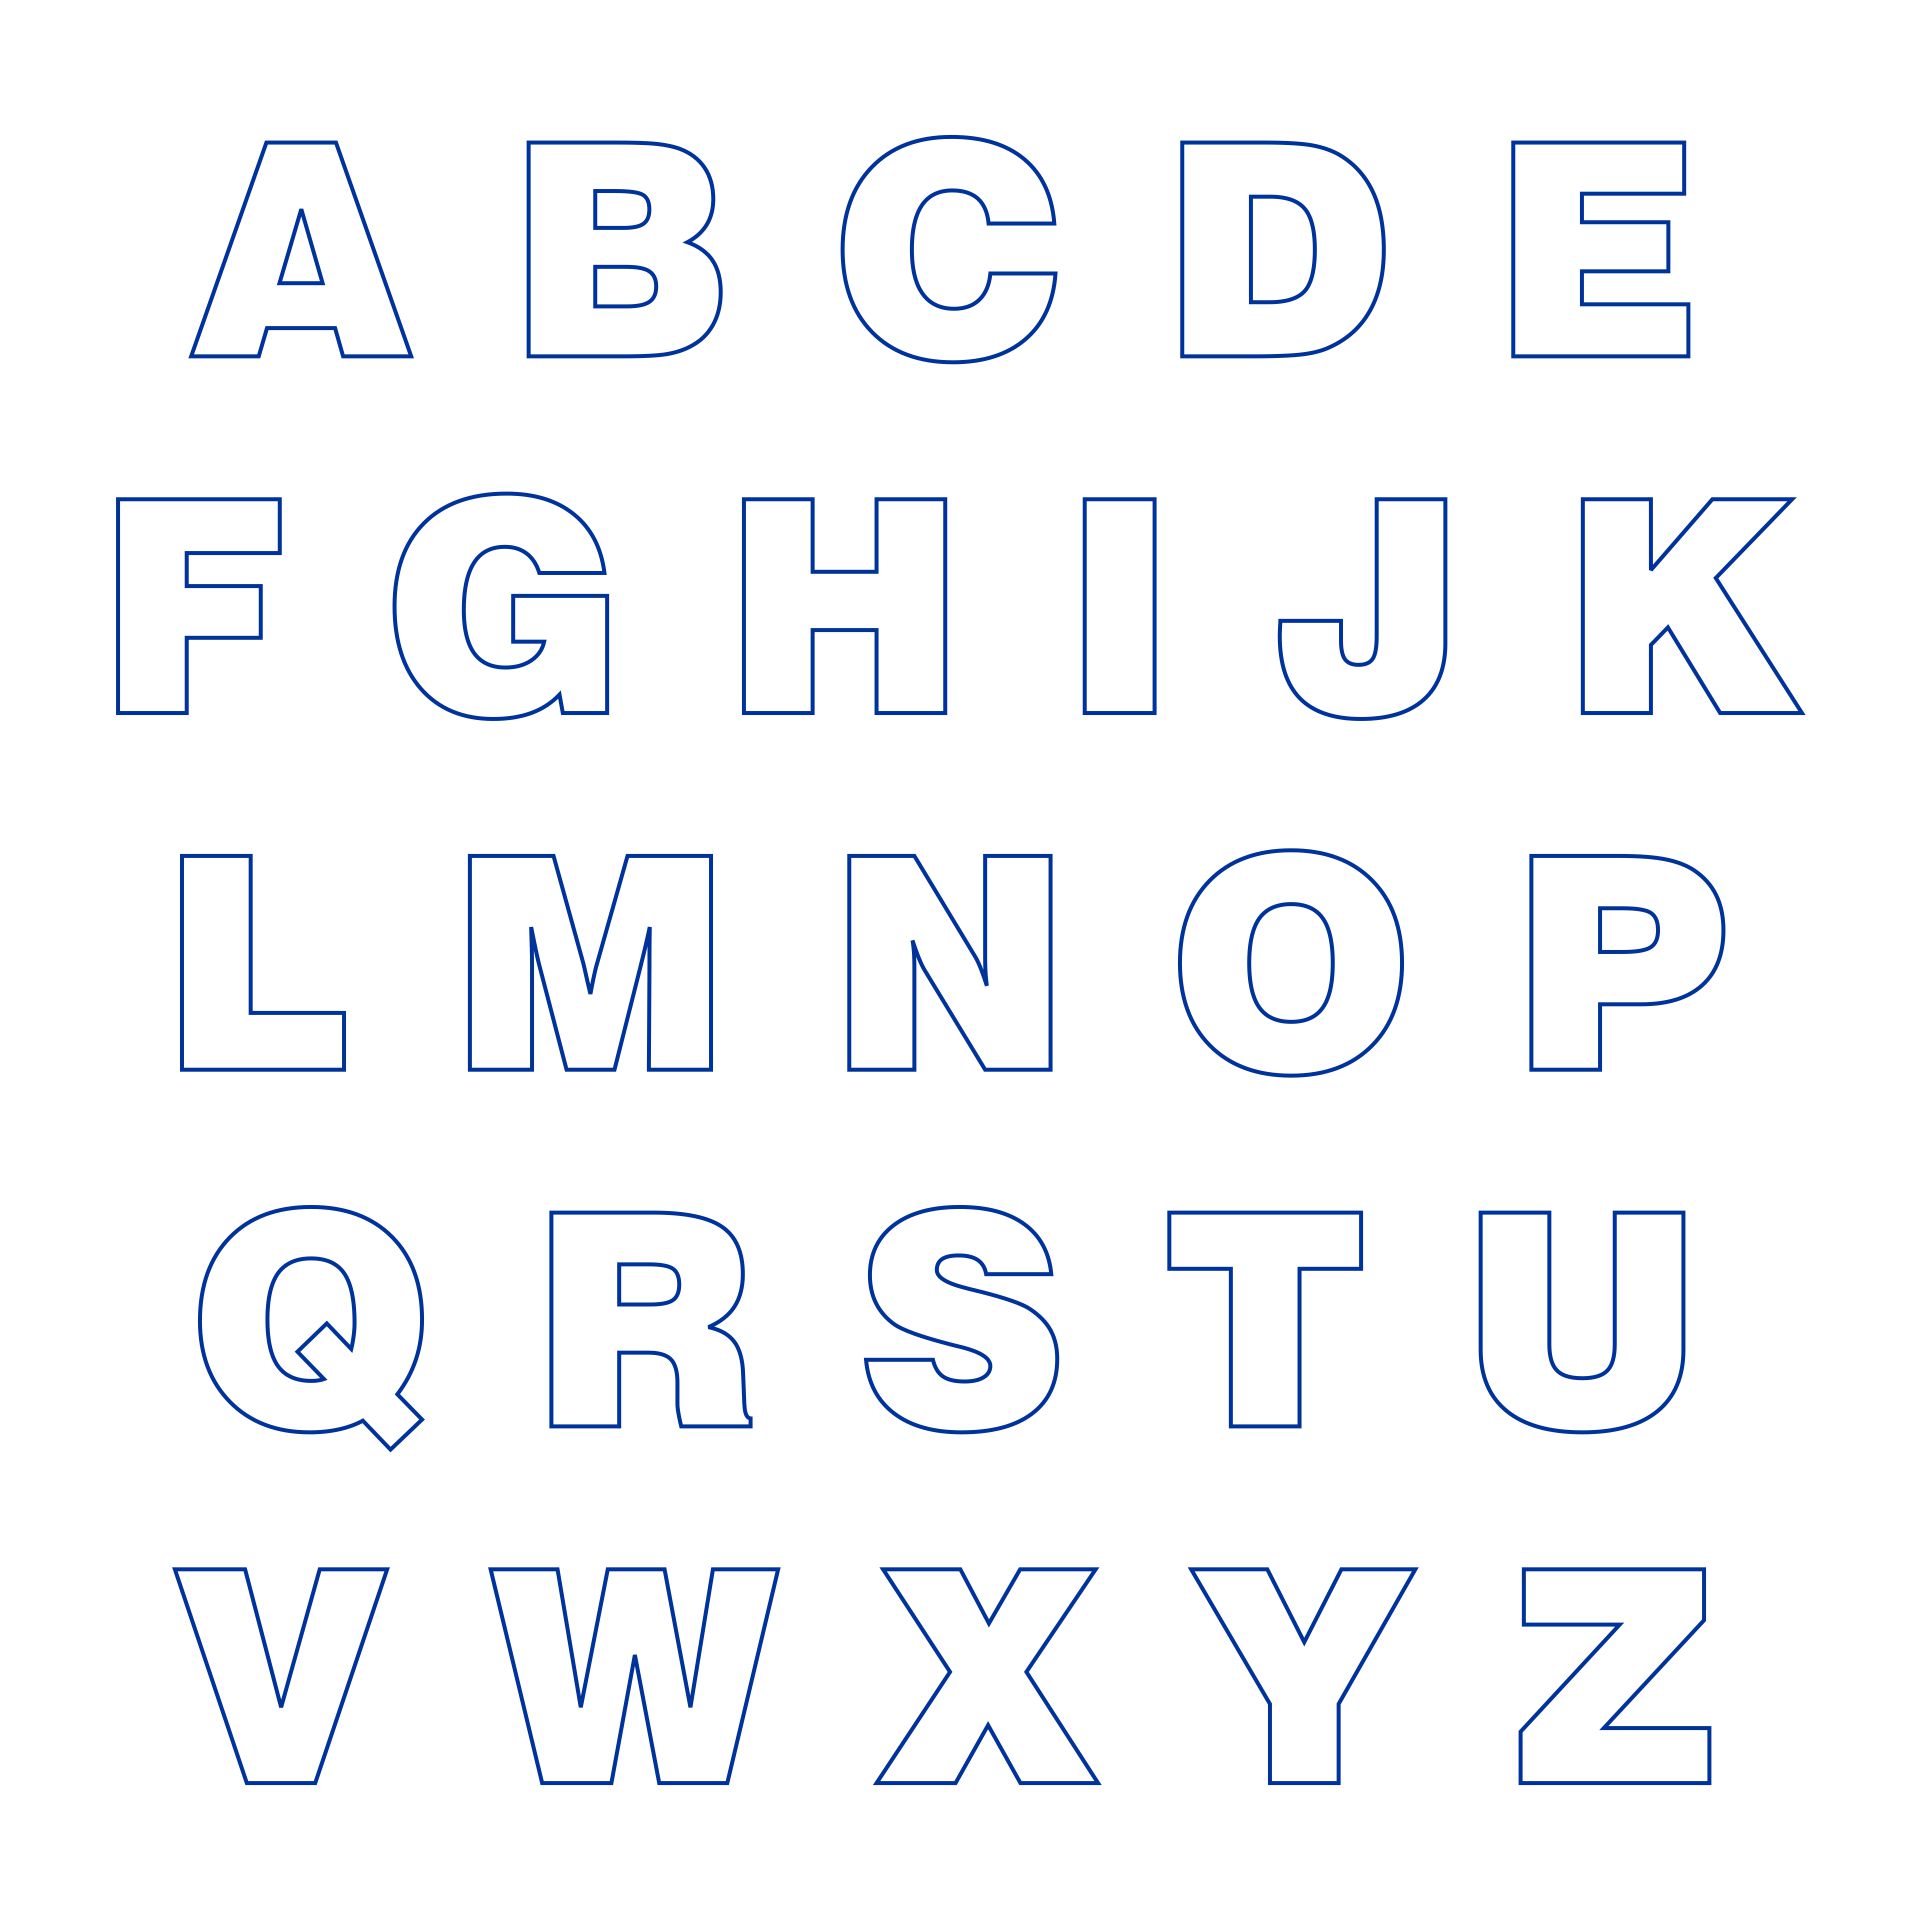 Print Cut Out Alphabet Letters